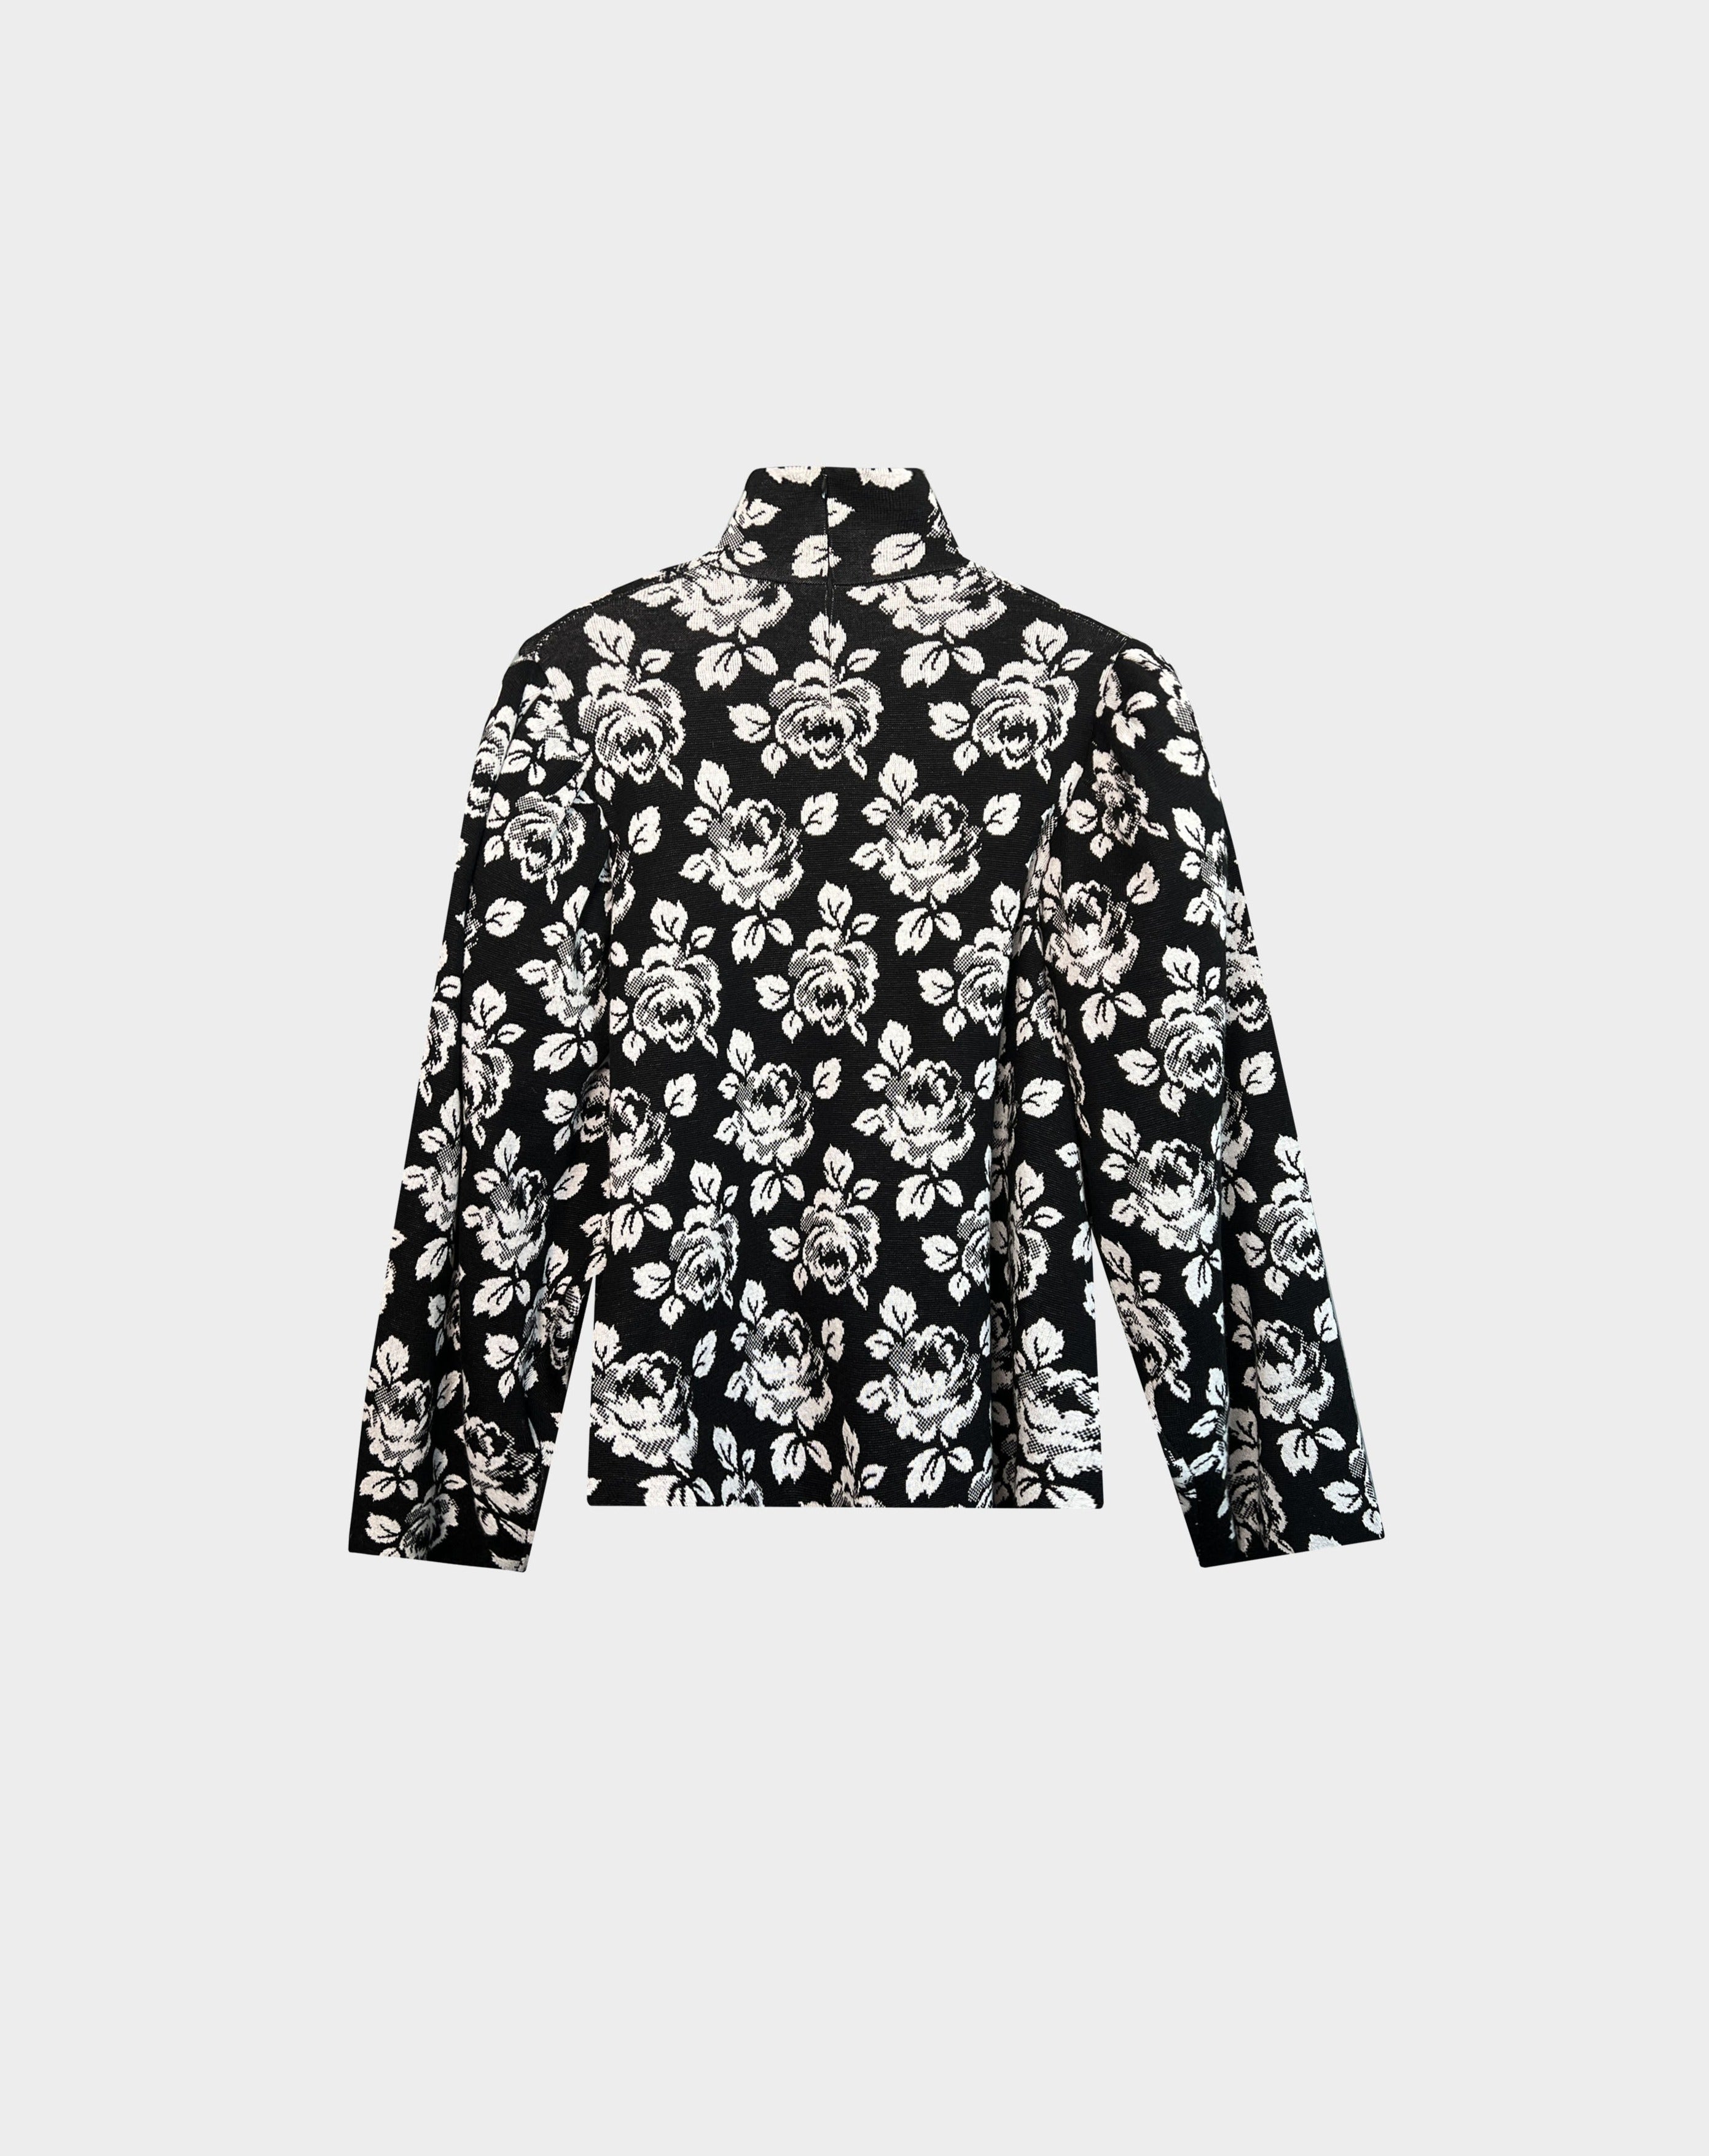 Balenciaga 2019 High-Neck Floral Jacquard Sweater